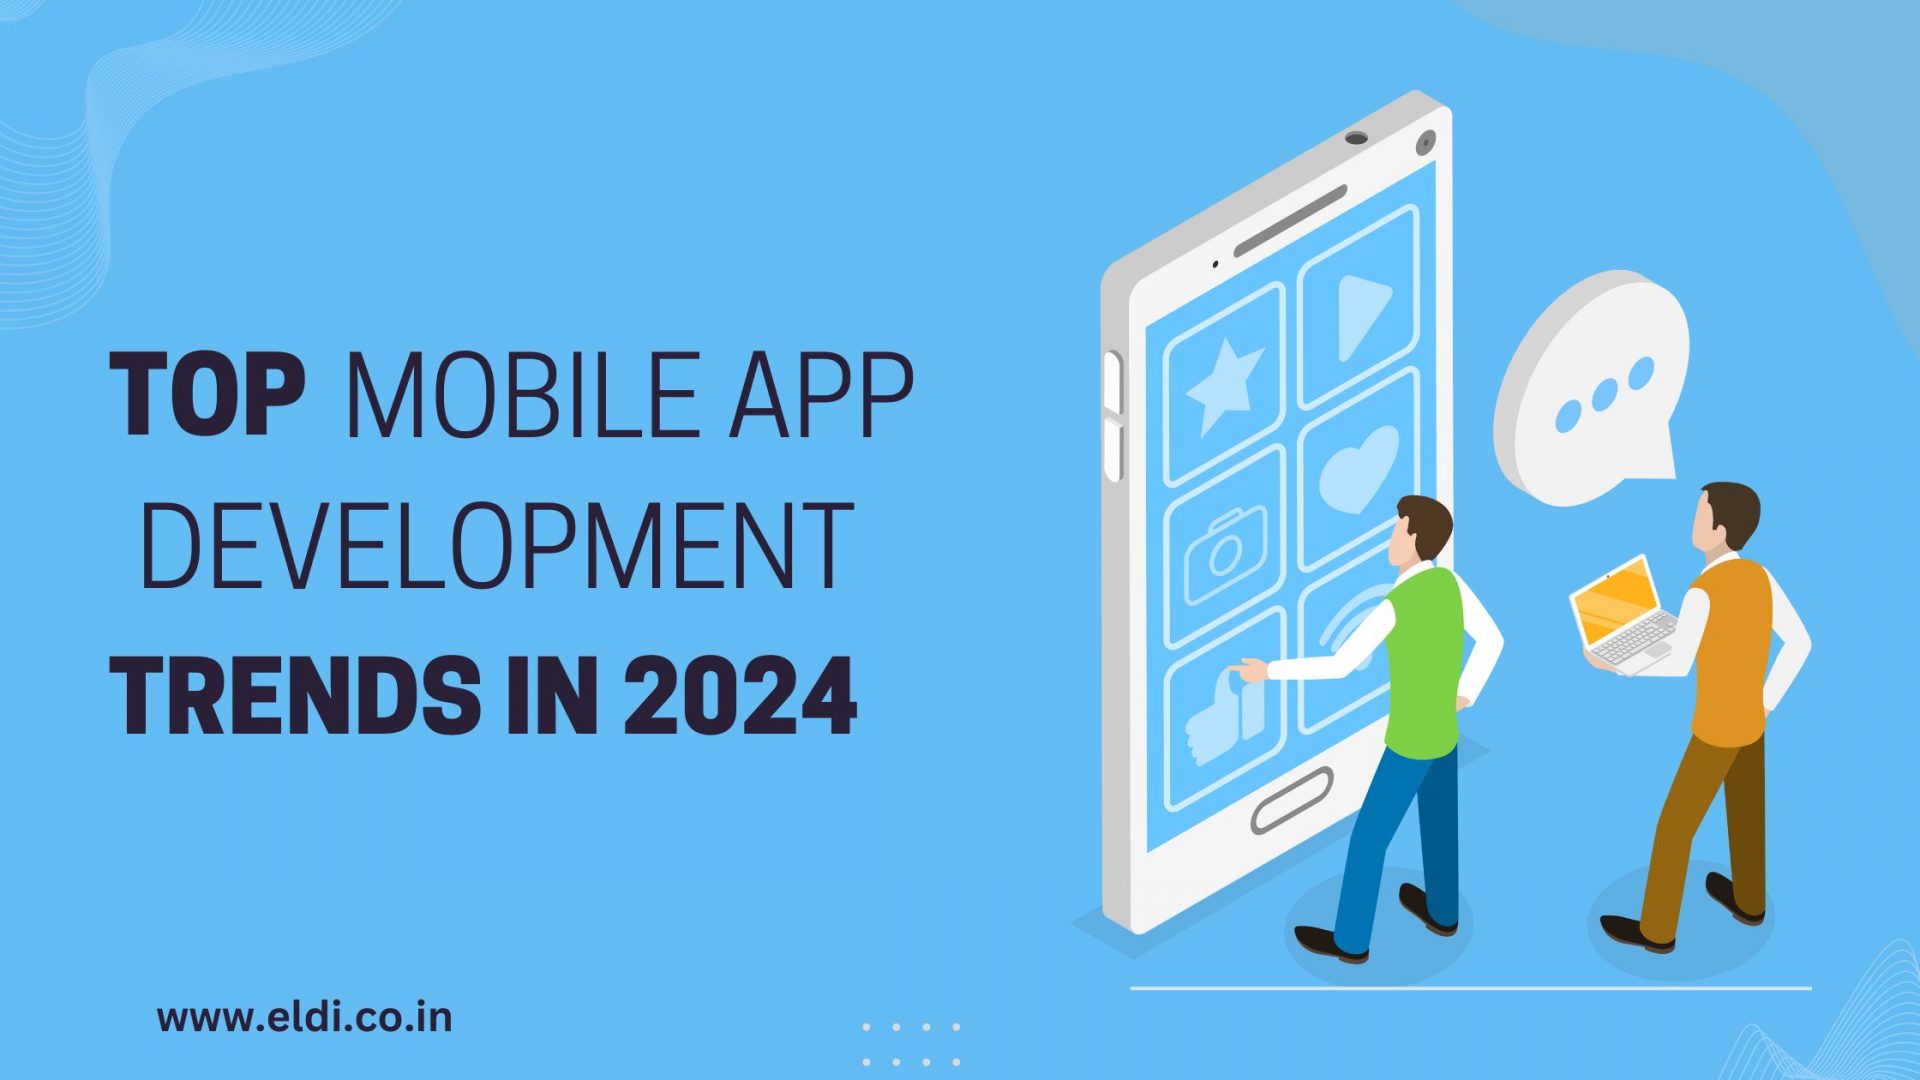 Top mobile app development trends in 2024